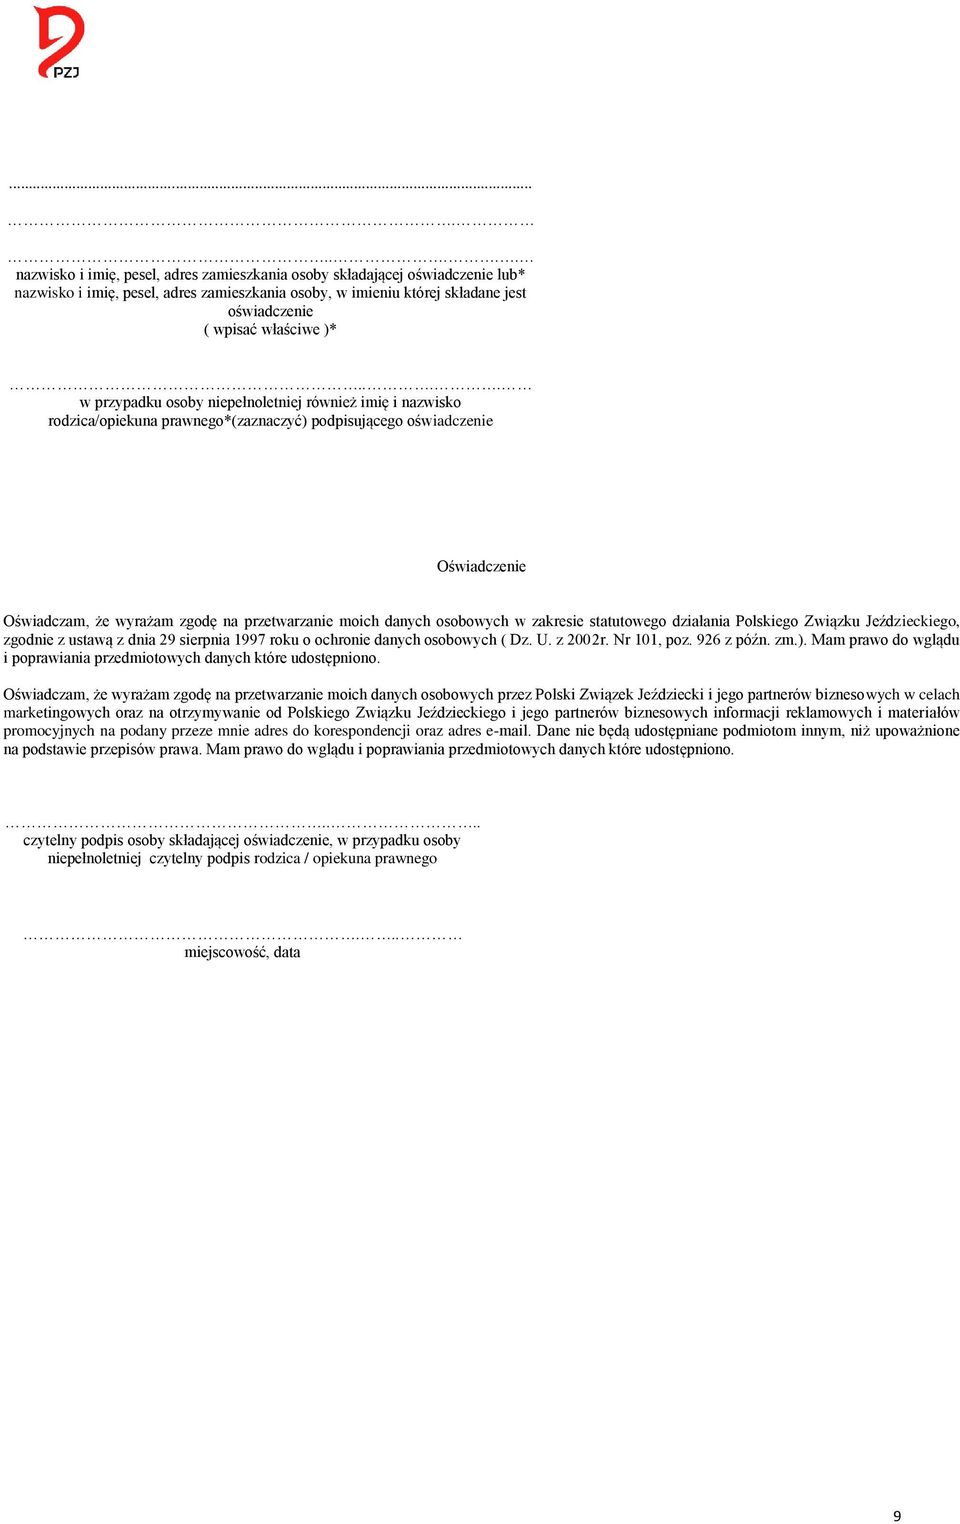 osobowych w zakresie statutowego działania Polskiego Związku Jeździeckiego, zgodnie z ustawą z dnia 29 sierpnia 1997 roku o ochronie danych osobowych ( Dz.. z 2002r. Nr 101, poz. 926 z późn. zm.).